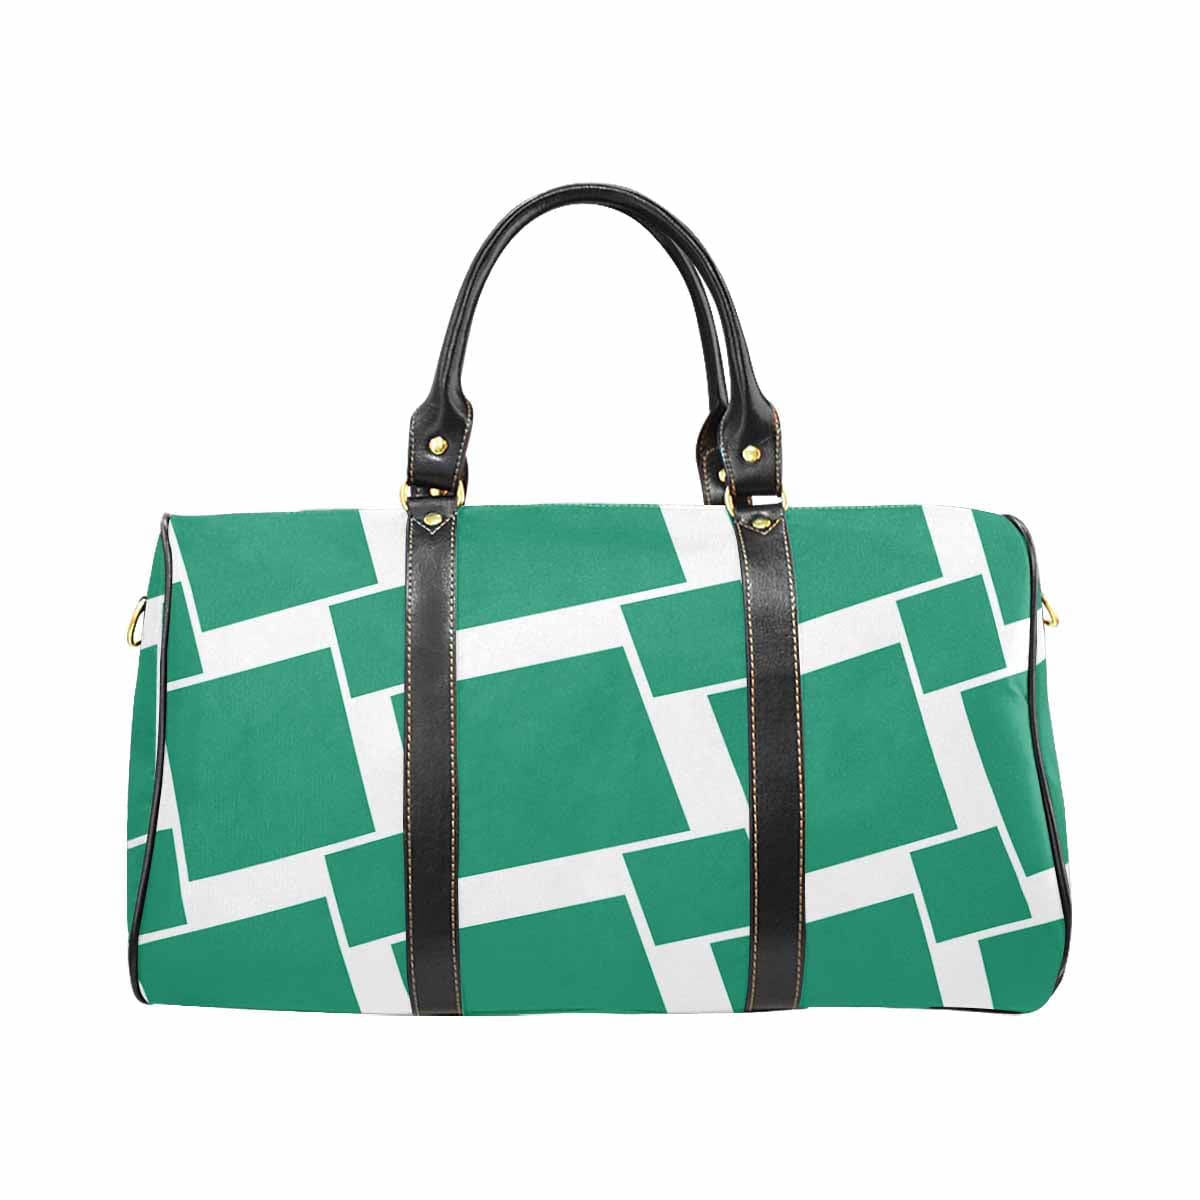 Travel Bag Adjustable Shoulder Strap Carry On Bag Green - Bags | Travel Bags